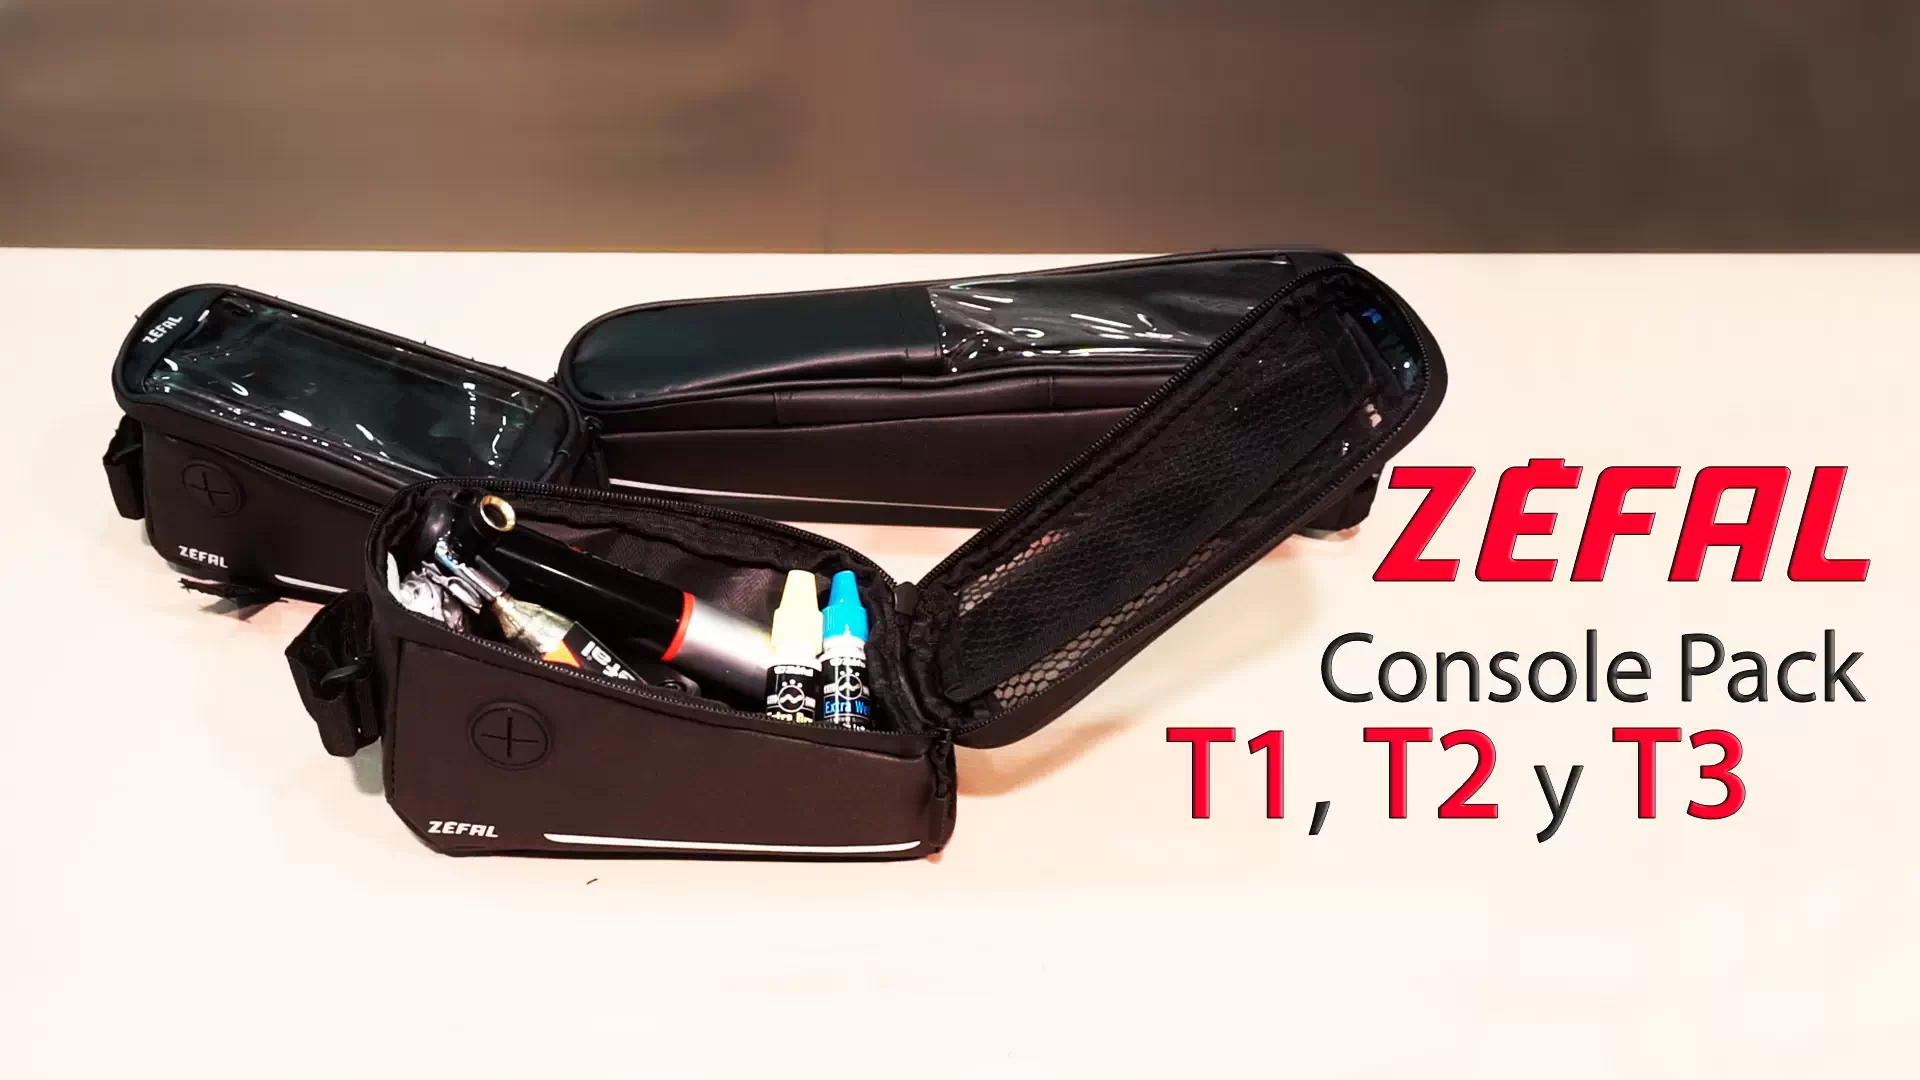 Zéfal Console Pack, smartphone y accesorios en una sola bolsa